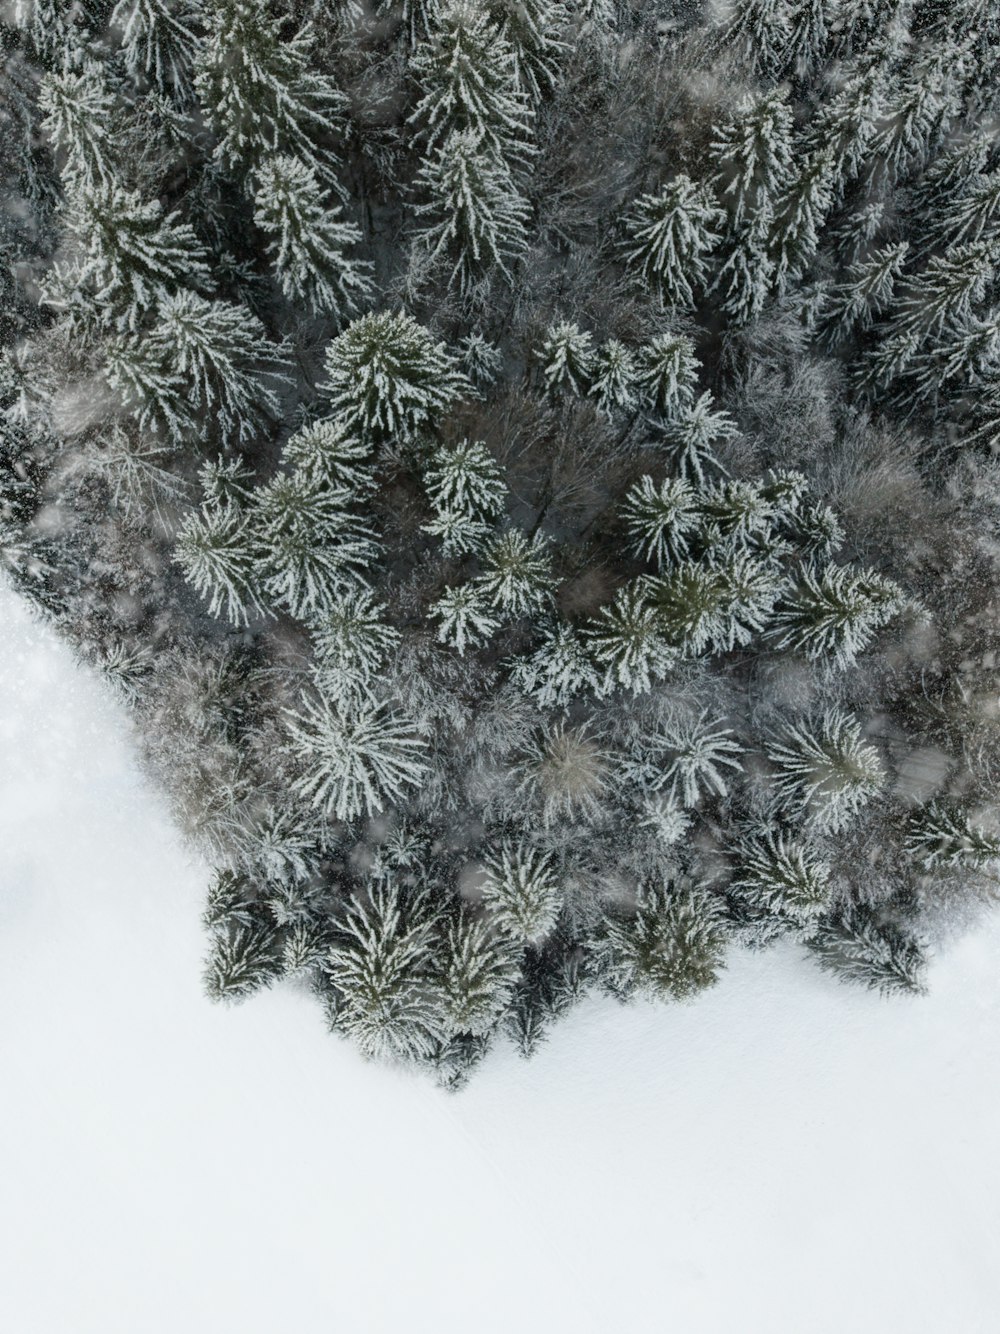 Luftaufnahme einer schneebedeckten Kiefer